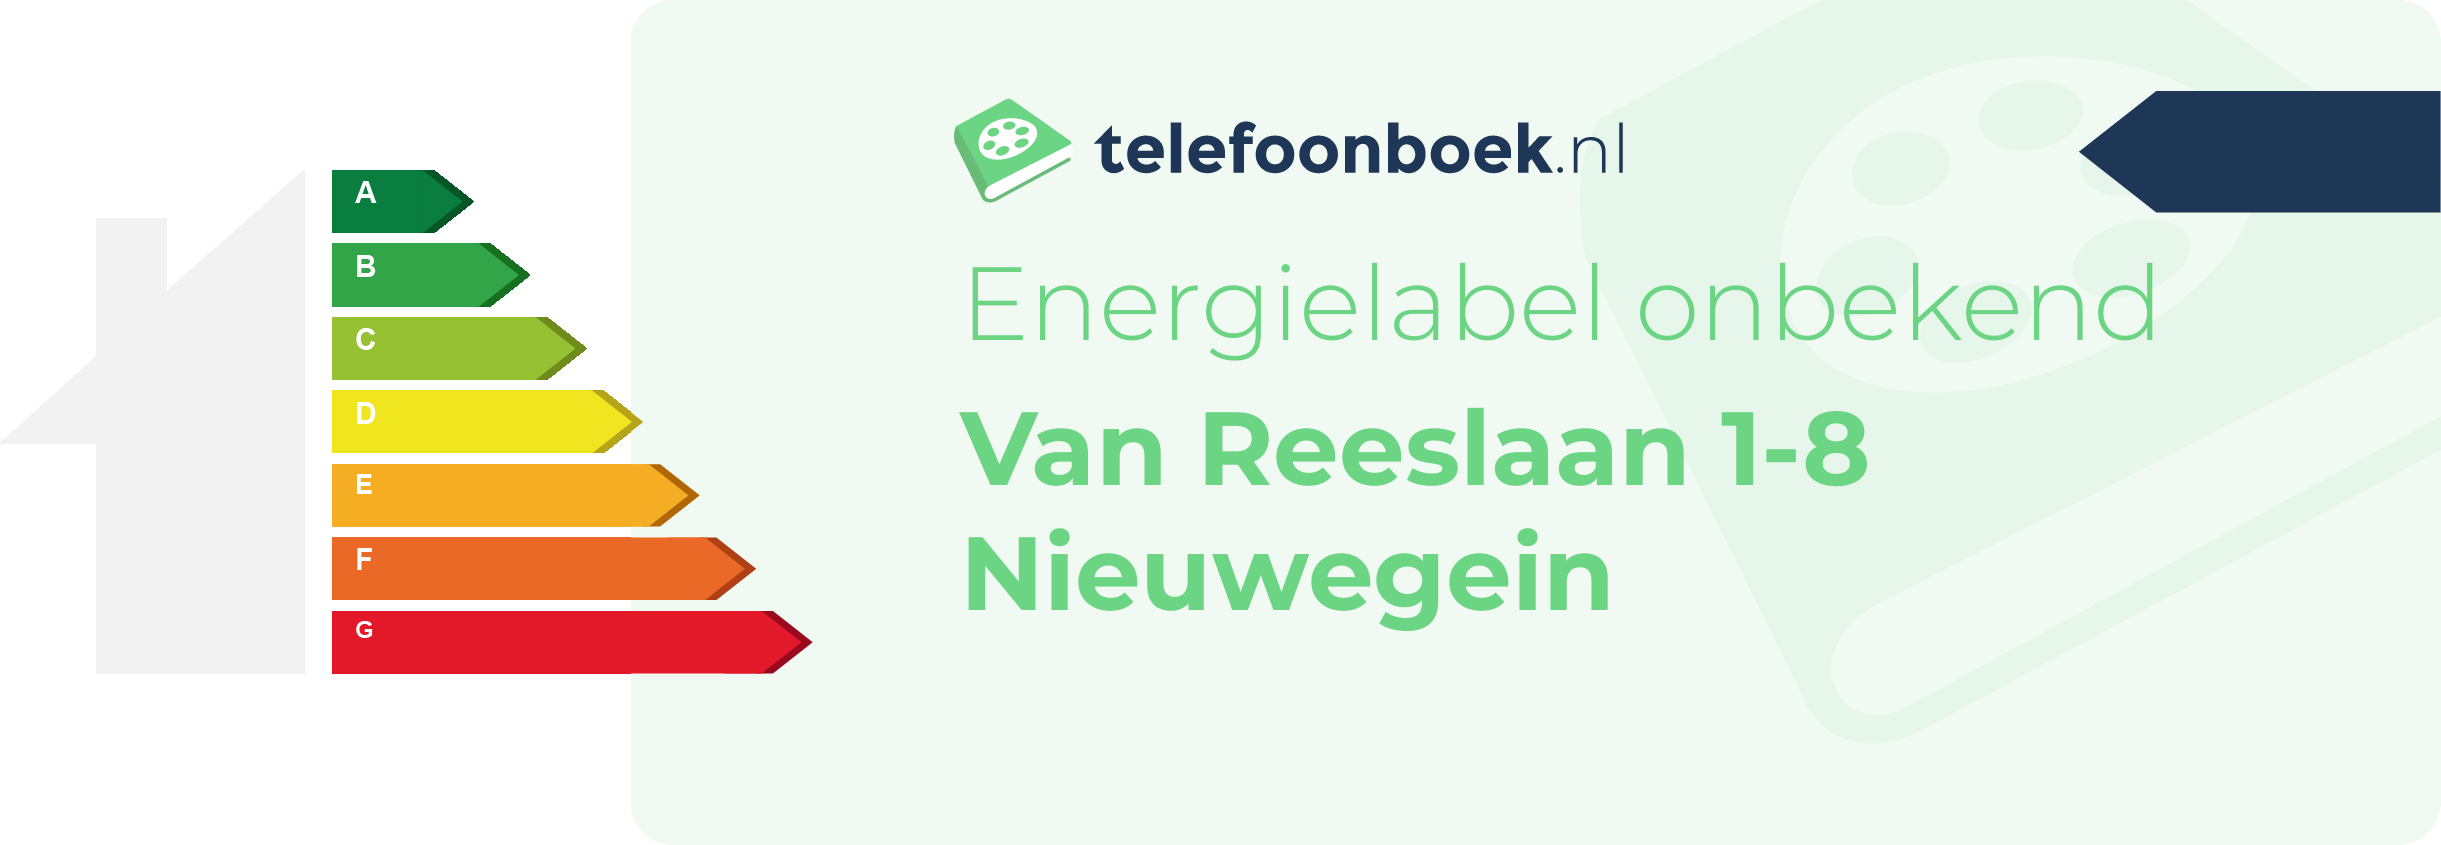 Energielabel Van Reeslaan 1-8 Nieuwegein